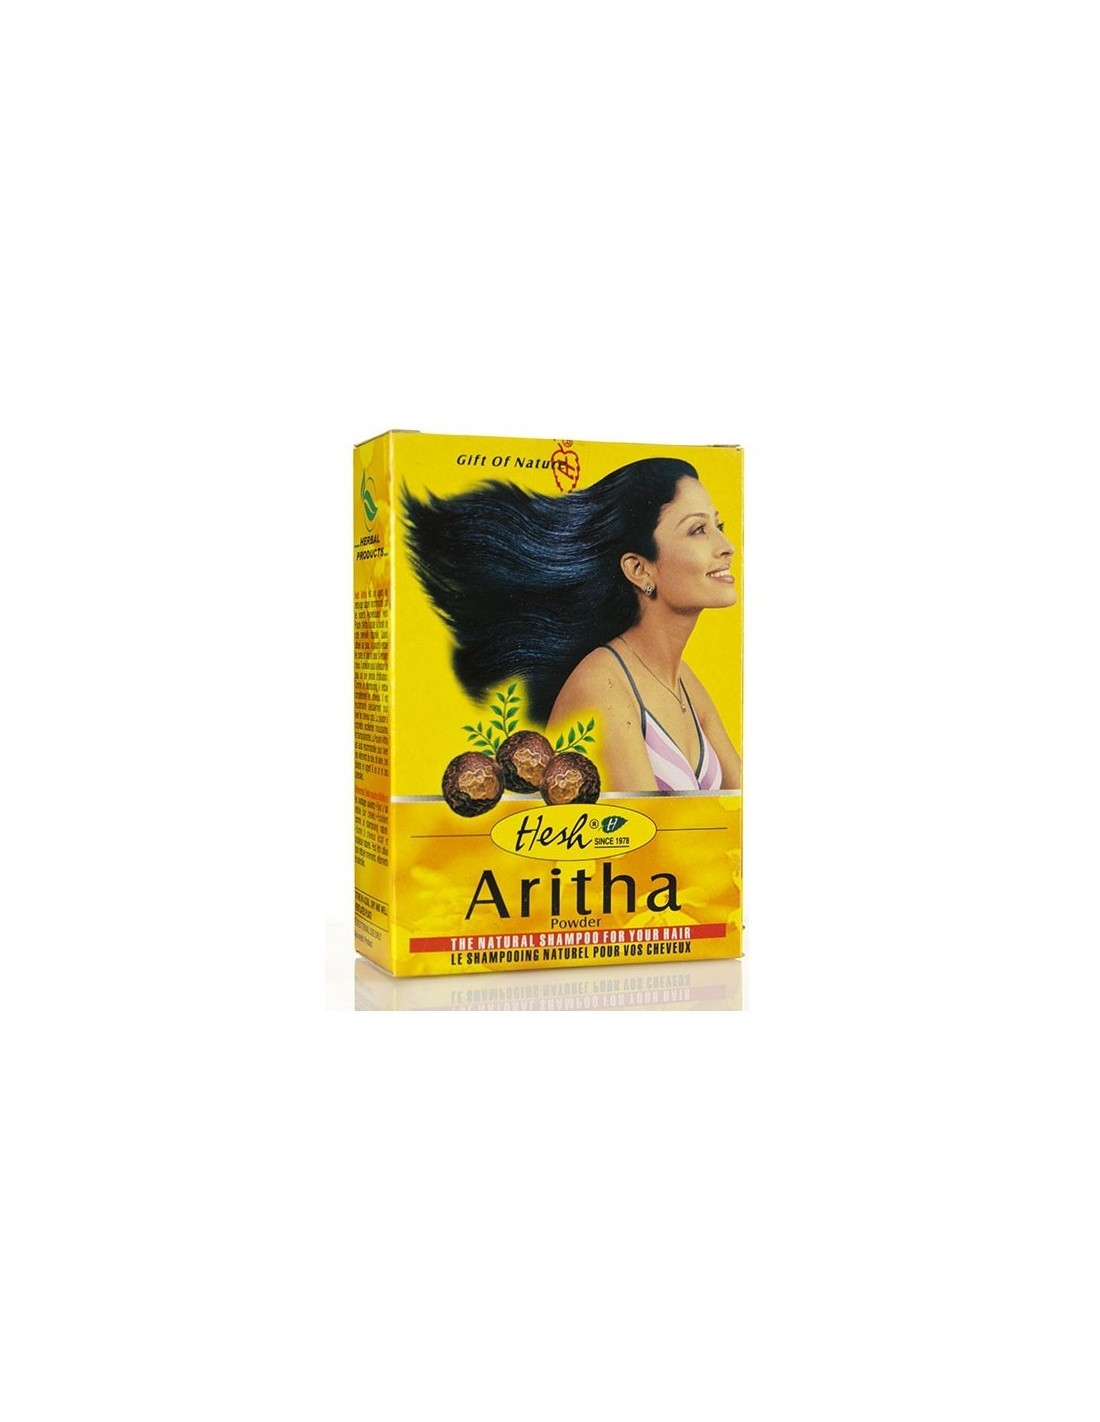 hesh naturalny szampon do włosów w pudrze aritha 100g